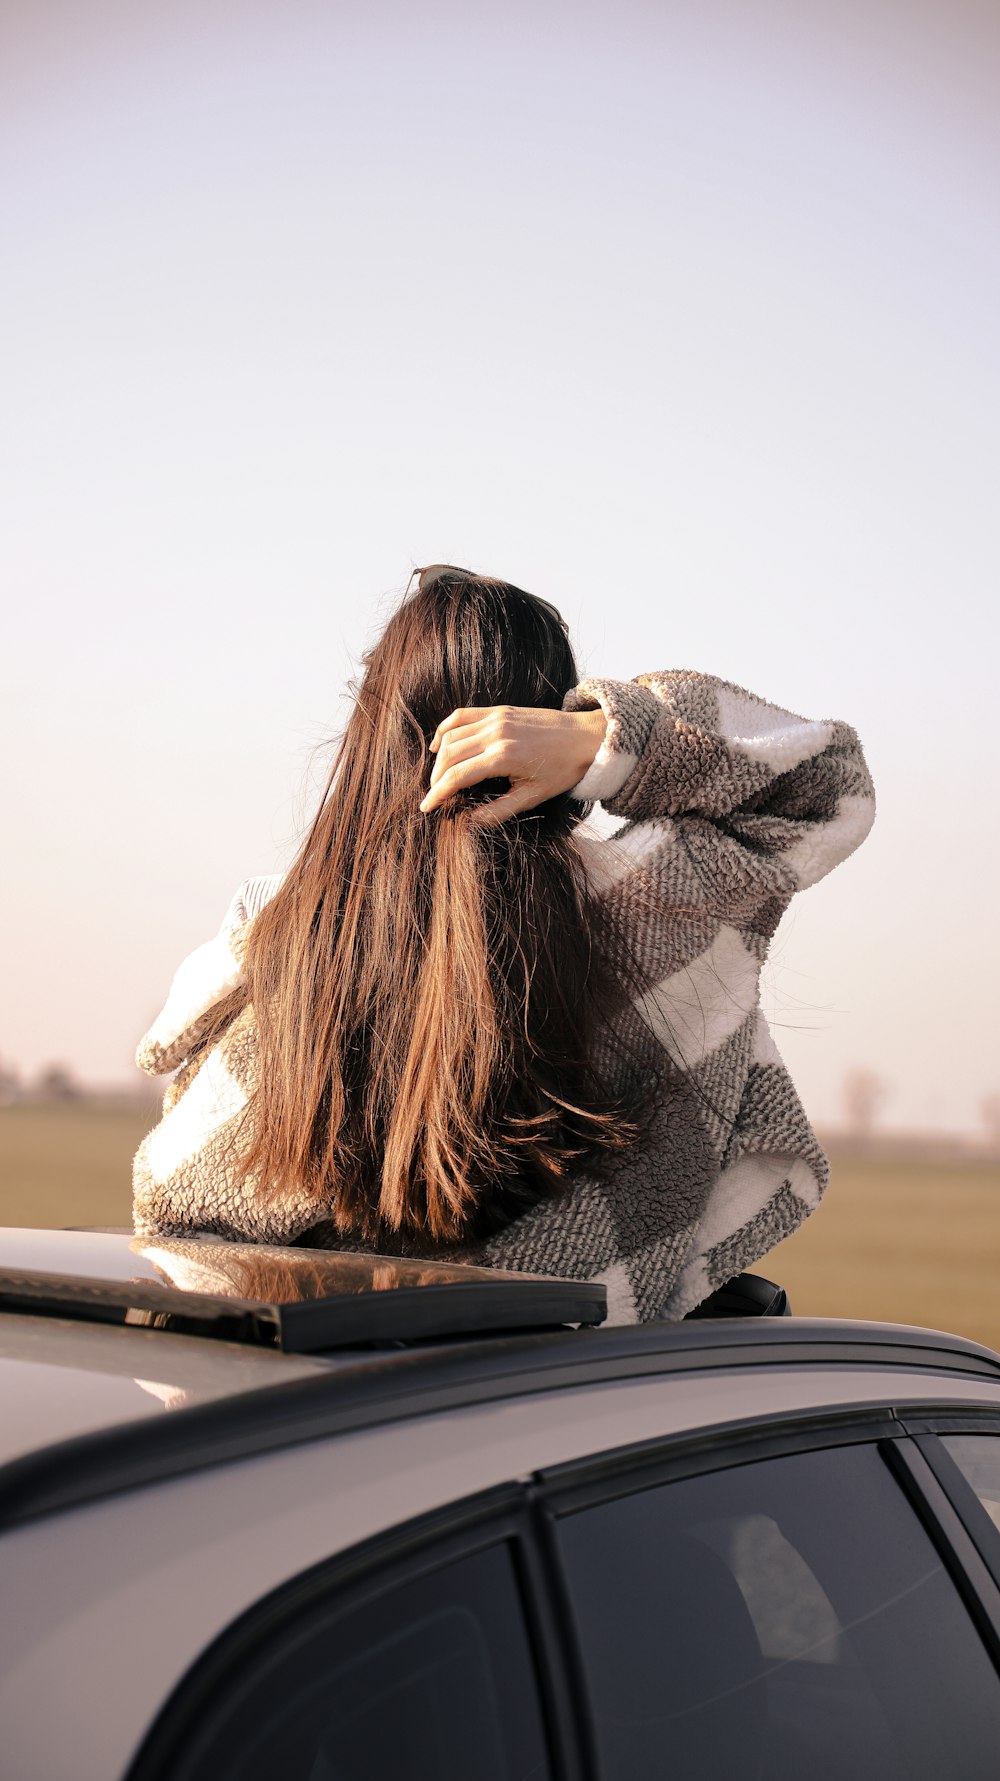 Eine Frau mit langen Haaren sitzt auf einem Auto